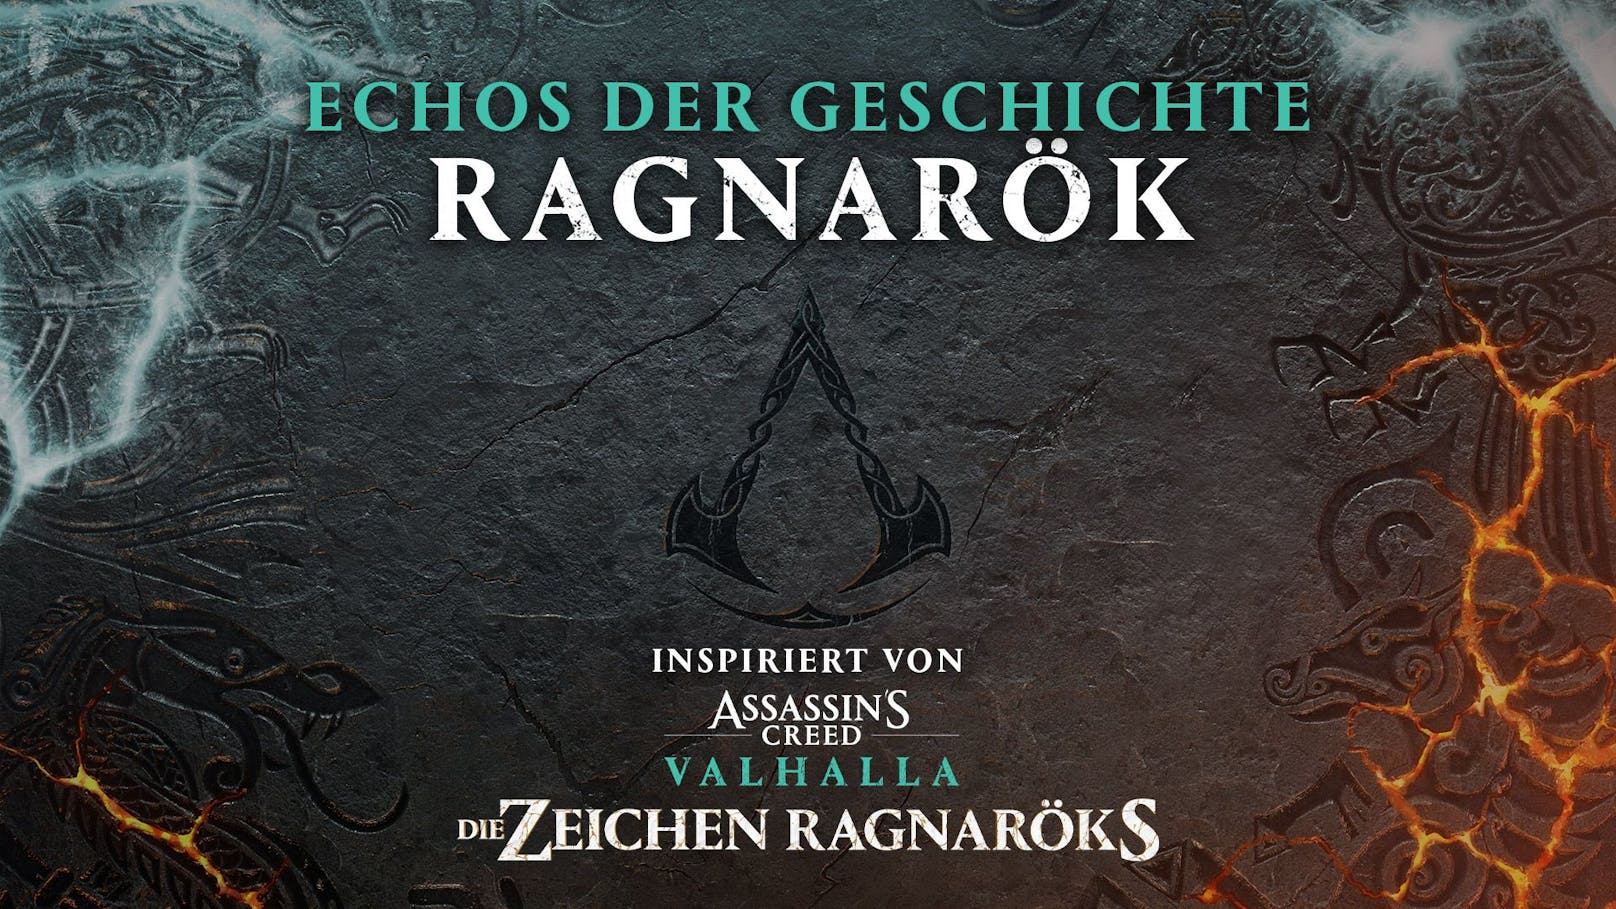 Der "Assassin‘s Creed"-Podcast "Echos der Geschichte" erforscht die nordischen Göttersagen und ist ab sofort erhältlich.